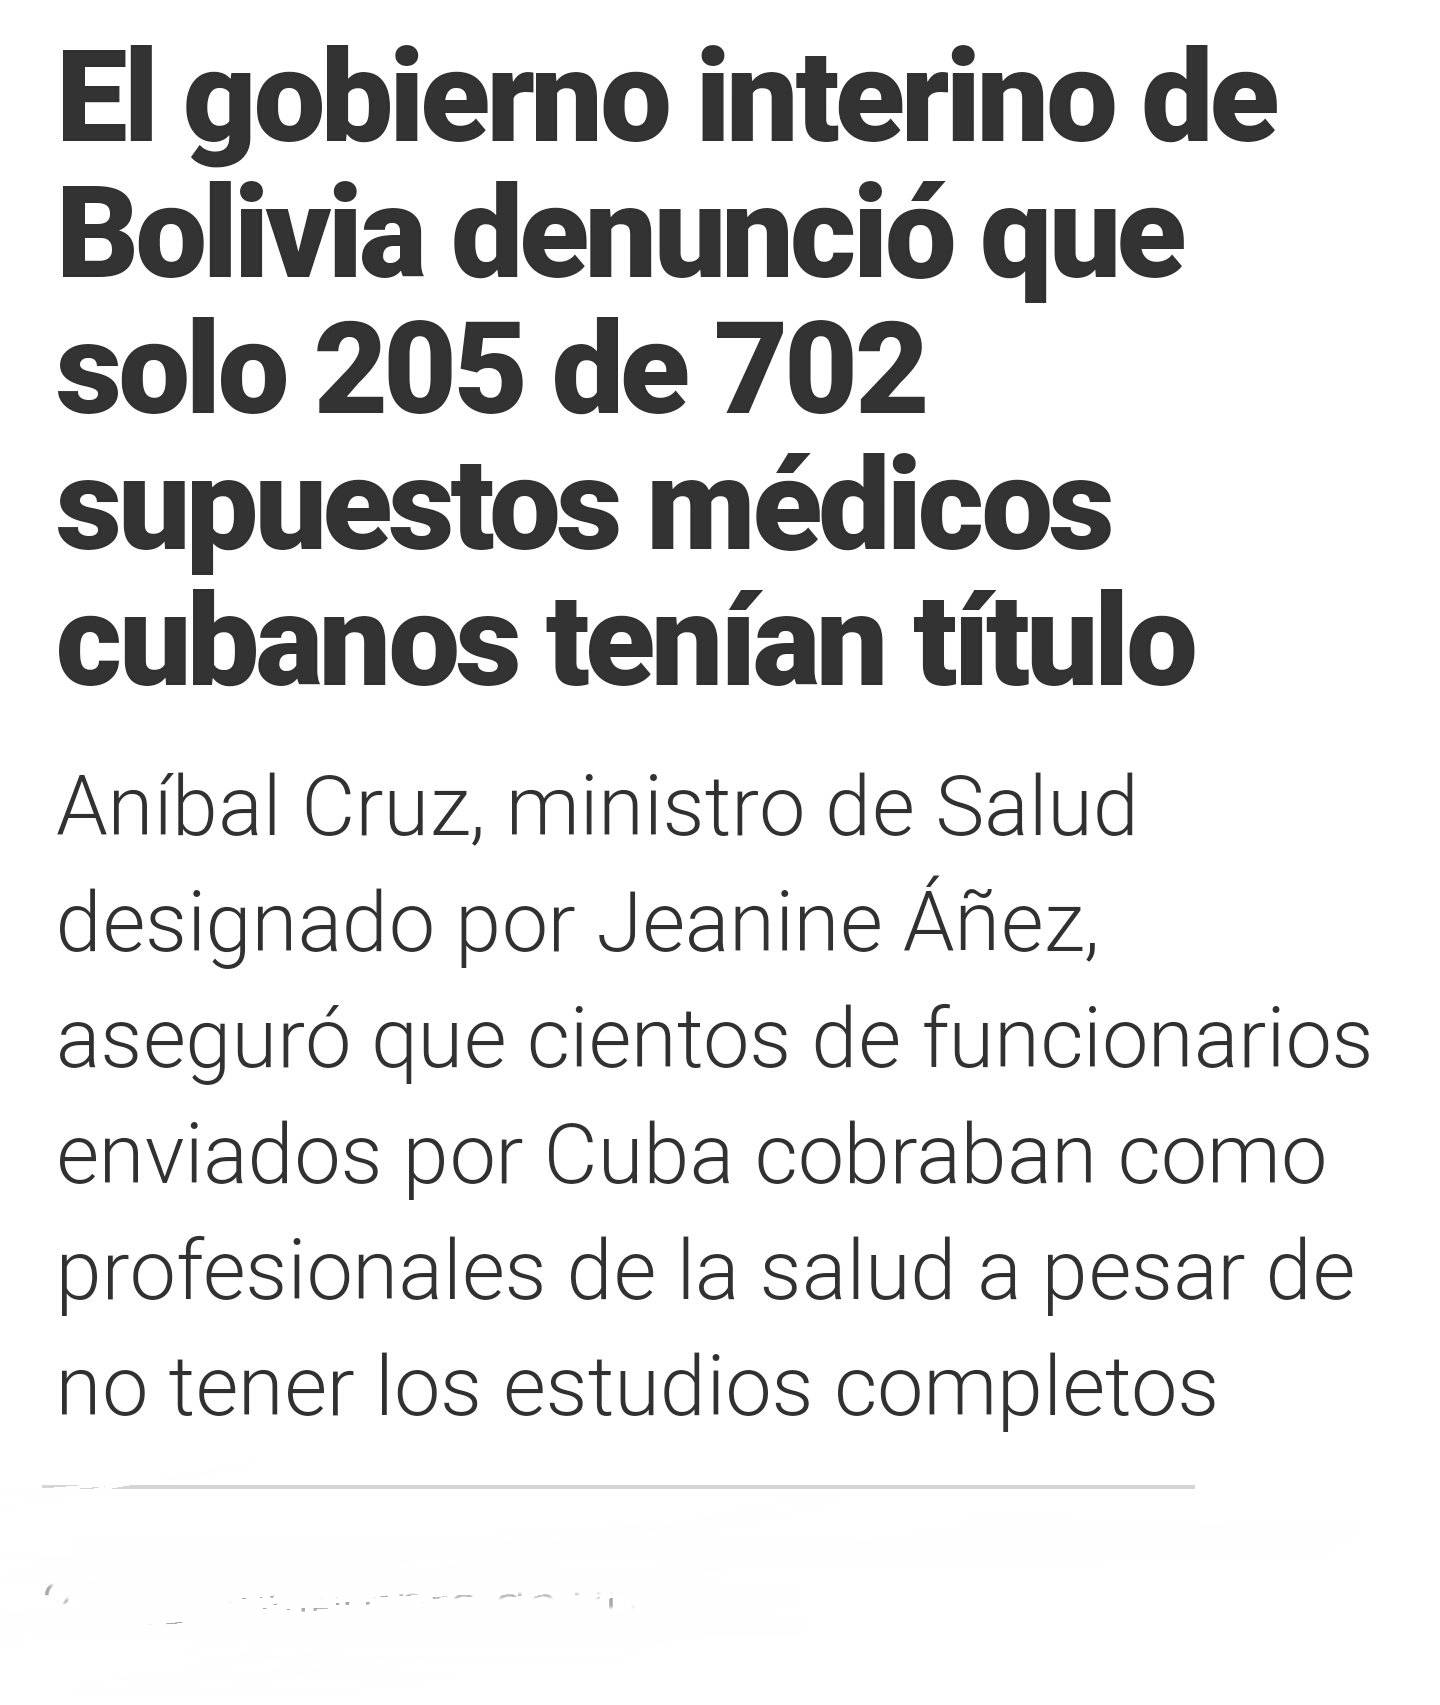 NO A LOS  ESPIAS CUBANOS EN ARG. DE 700 APENAS 200 TENIAN TITULO DE MEDICO